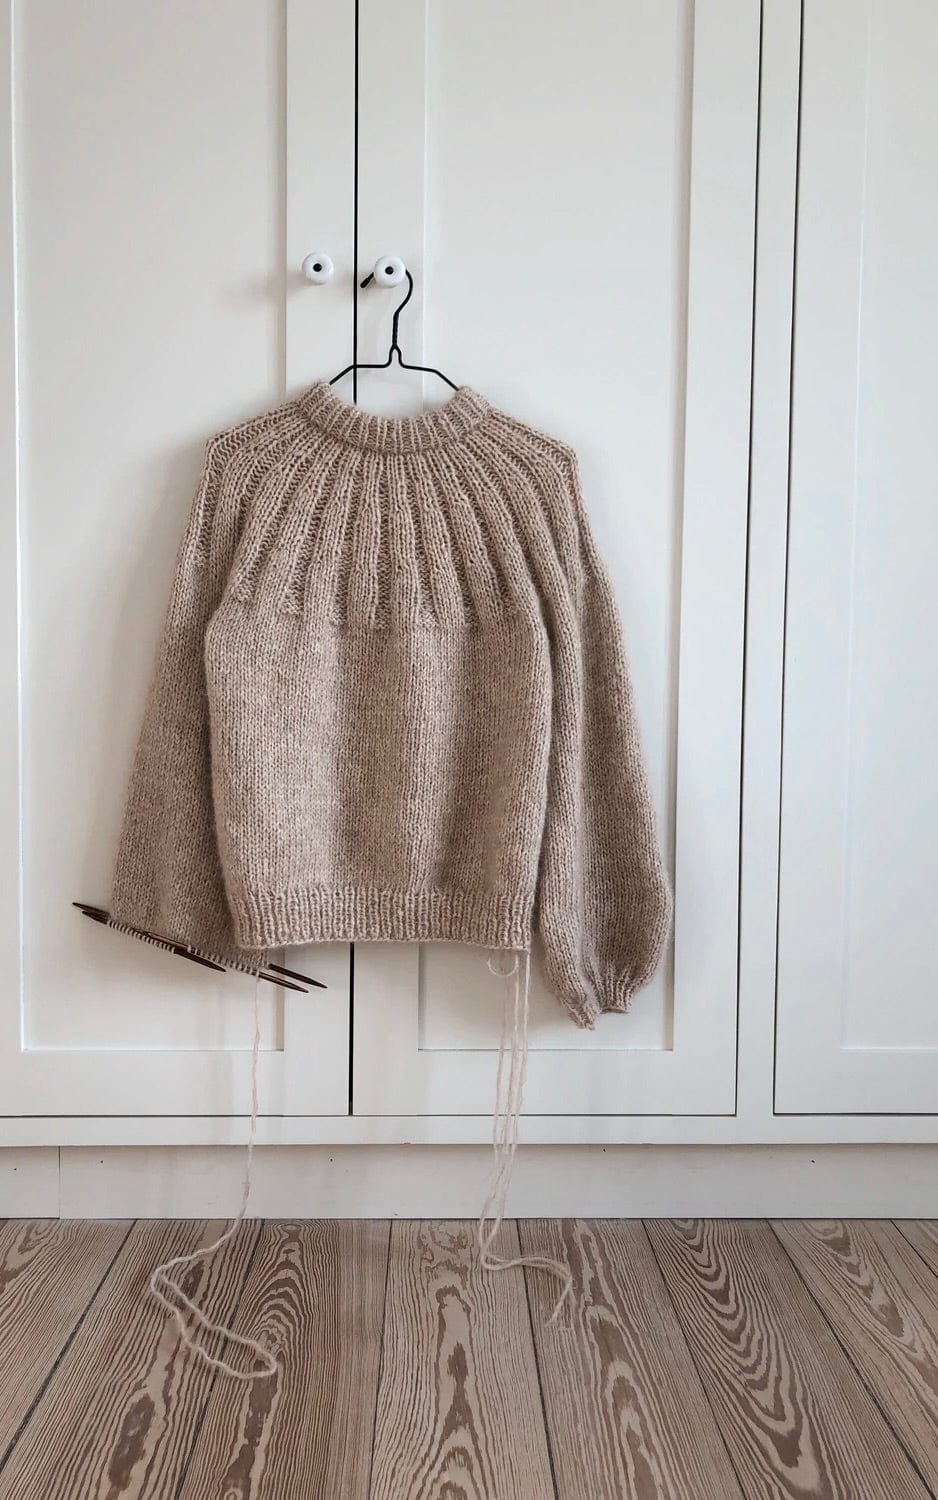 Sunday Sweater - KOS & TYNN SILK MOHAIR - Strickset von PETITE KNIT jetzt online kaufen bei OONIQUE